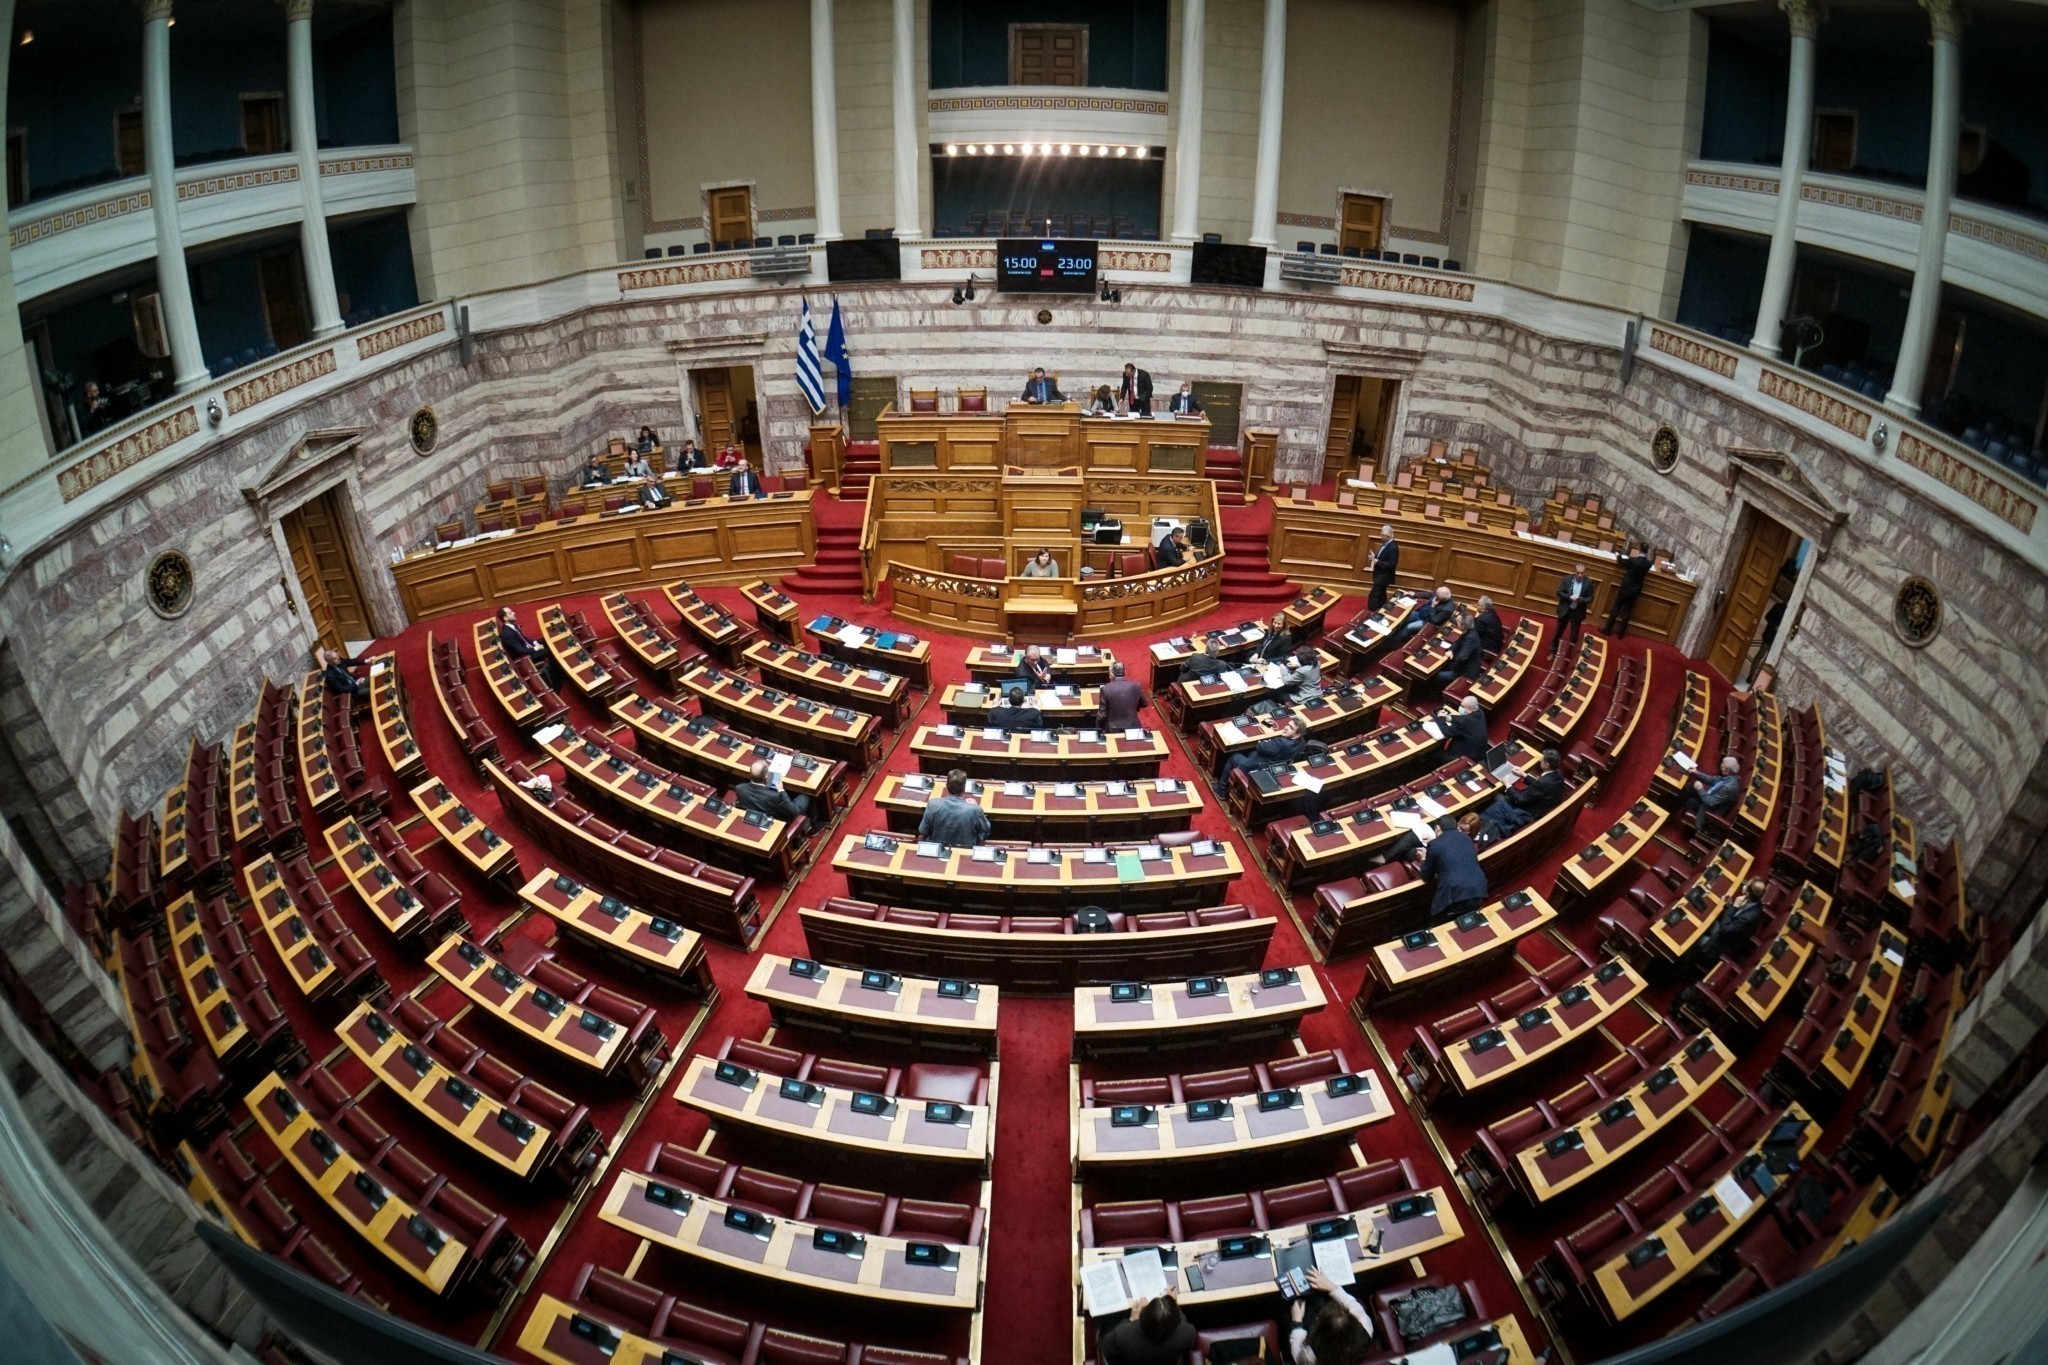 Βουλή: Άρση της ασυλίας των 11 βουλευτών των Σπαρτιατών αποφάσισε η Ολομέλεια